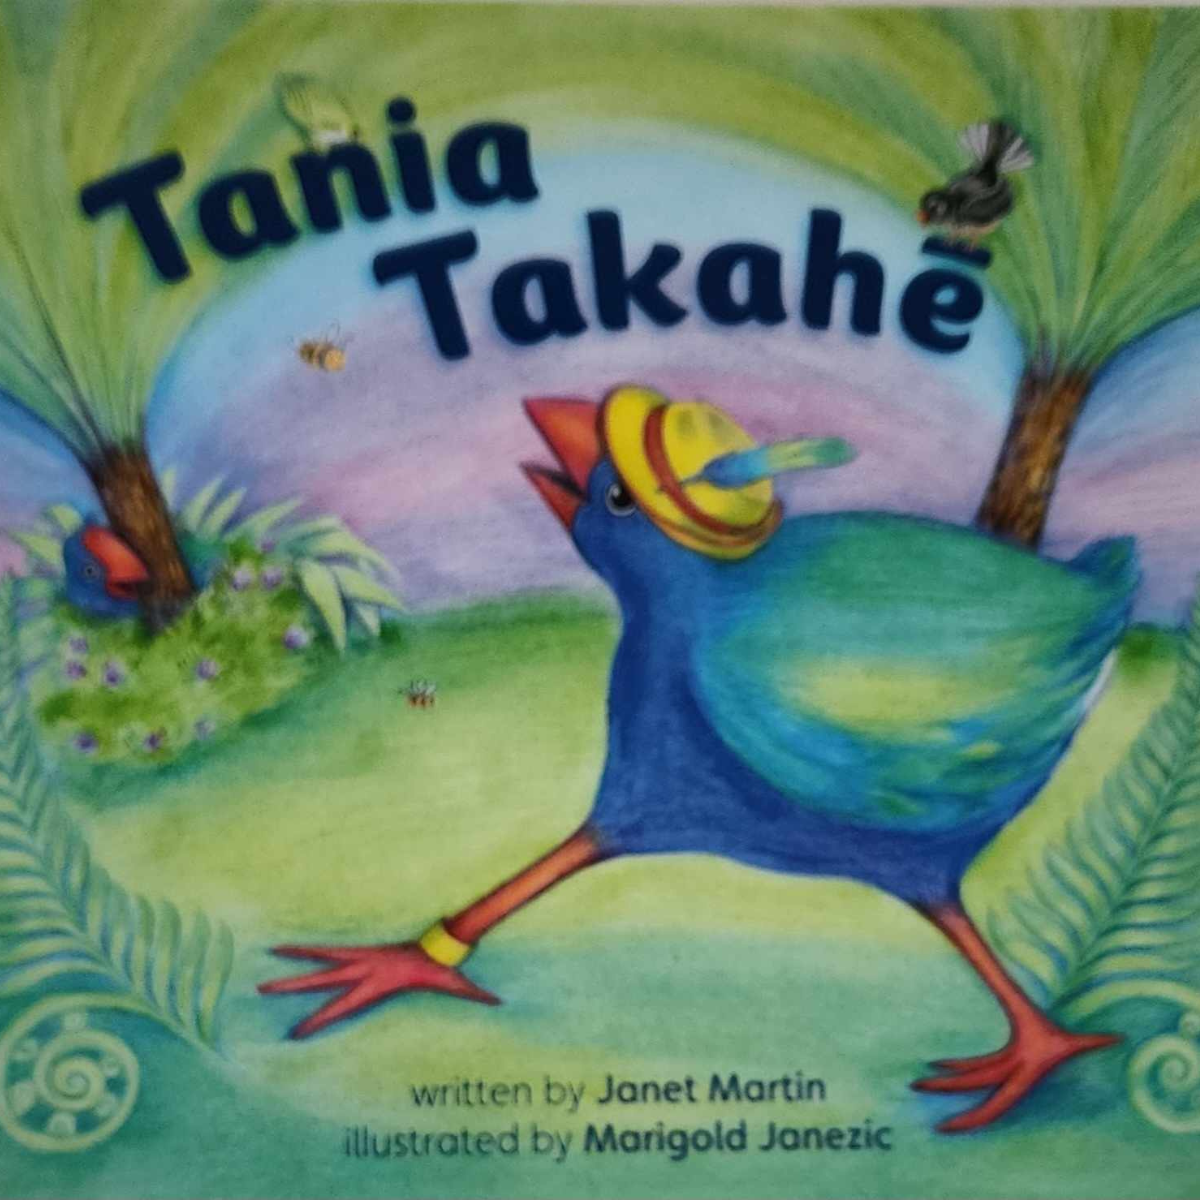 Tania Takahe